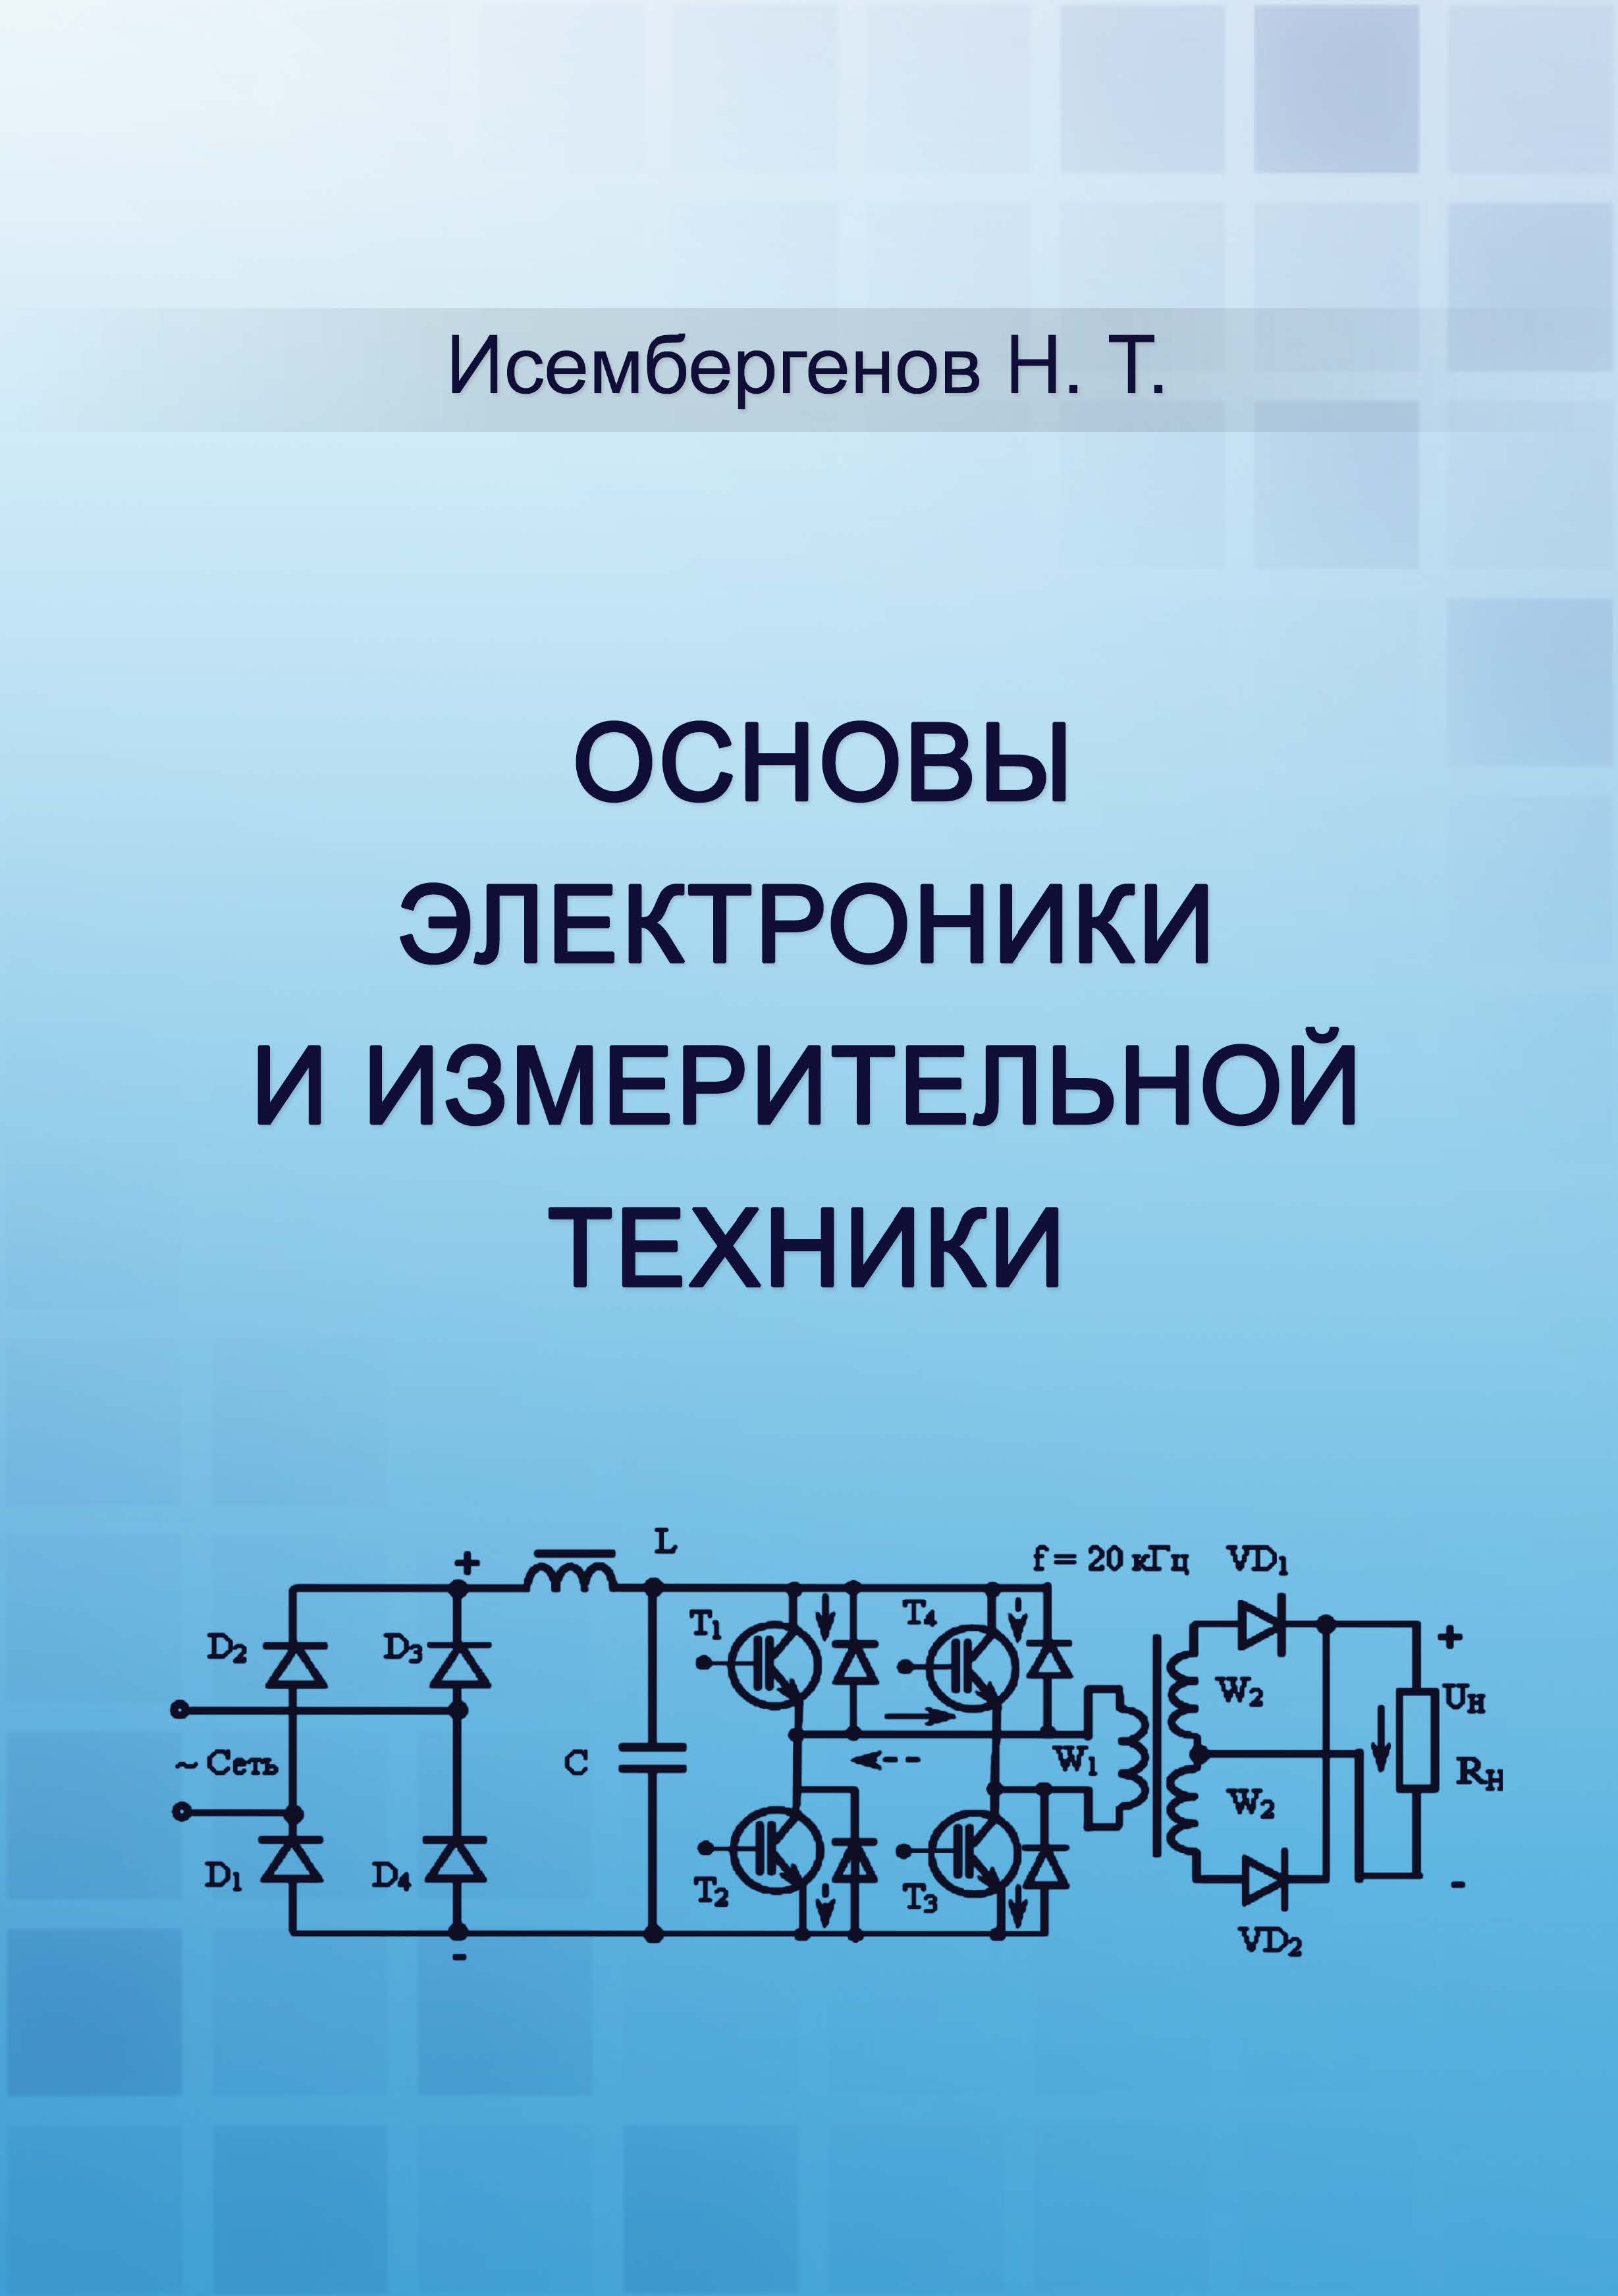 Основы электроники и измерительной техники: Учеб-
ник для студентов технических специальностей вузов
Казахстана.